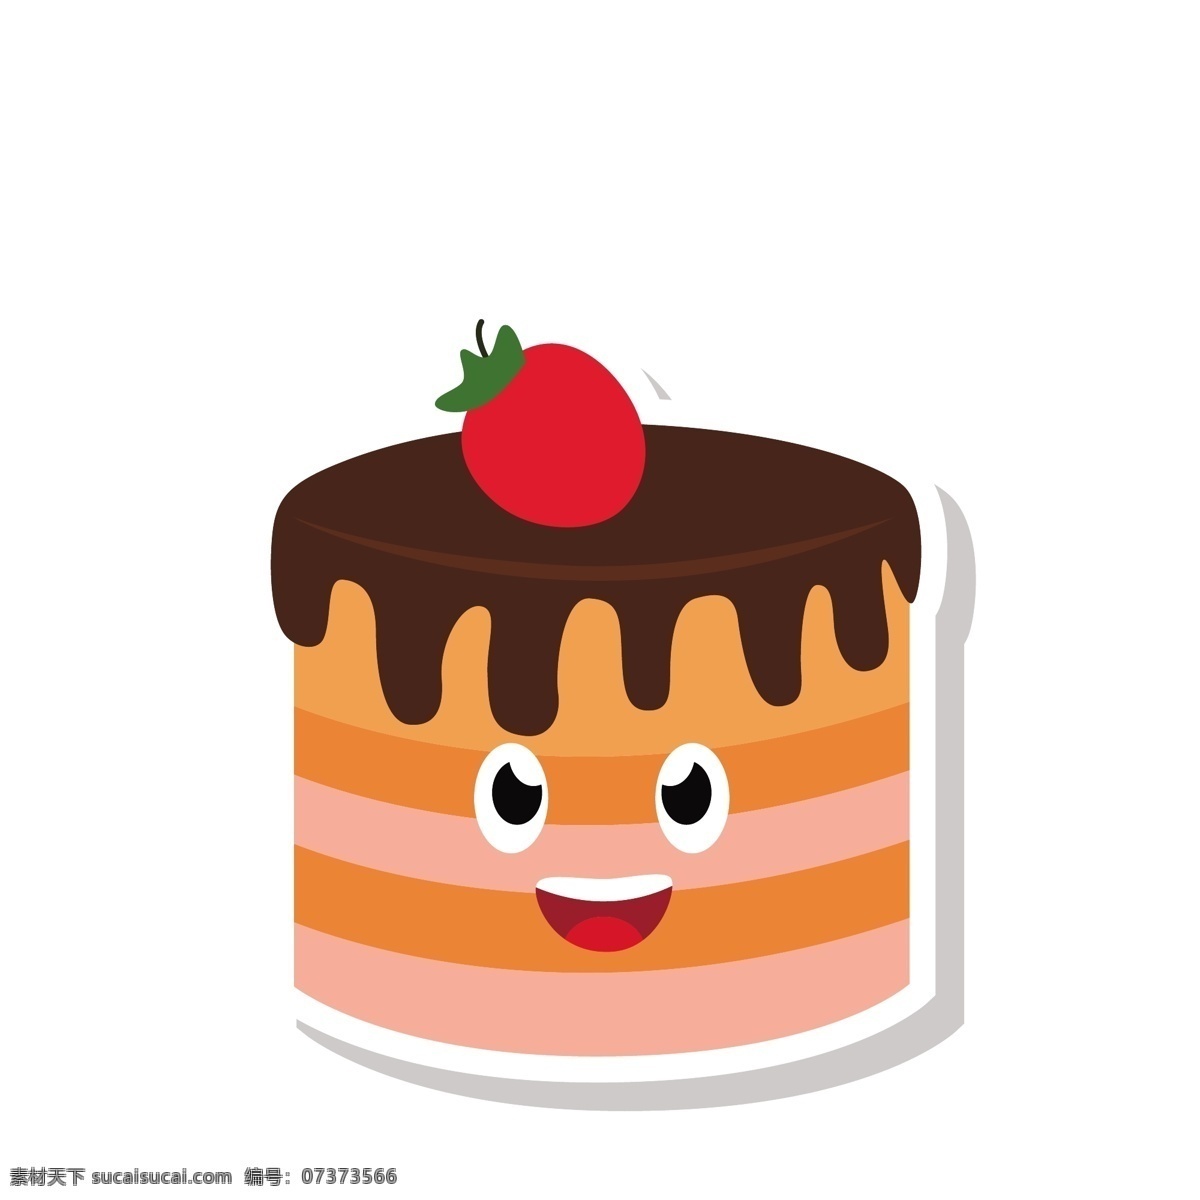 可爱 蛋糕 矢量 免 抠 图 卡通的 手绘的 巧克力蛋糕 高兴的蛋糕 甜品 甜点 吃的 零食 开心的蛋糕 带表情的蛋糕 草莓蛋糕